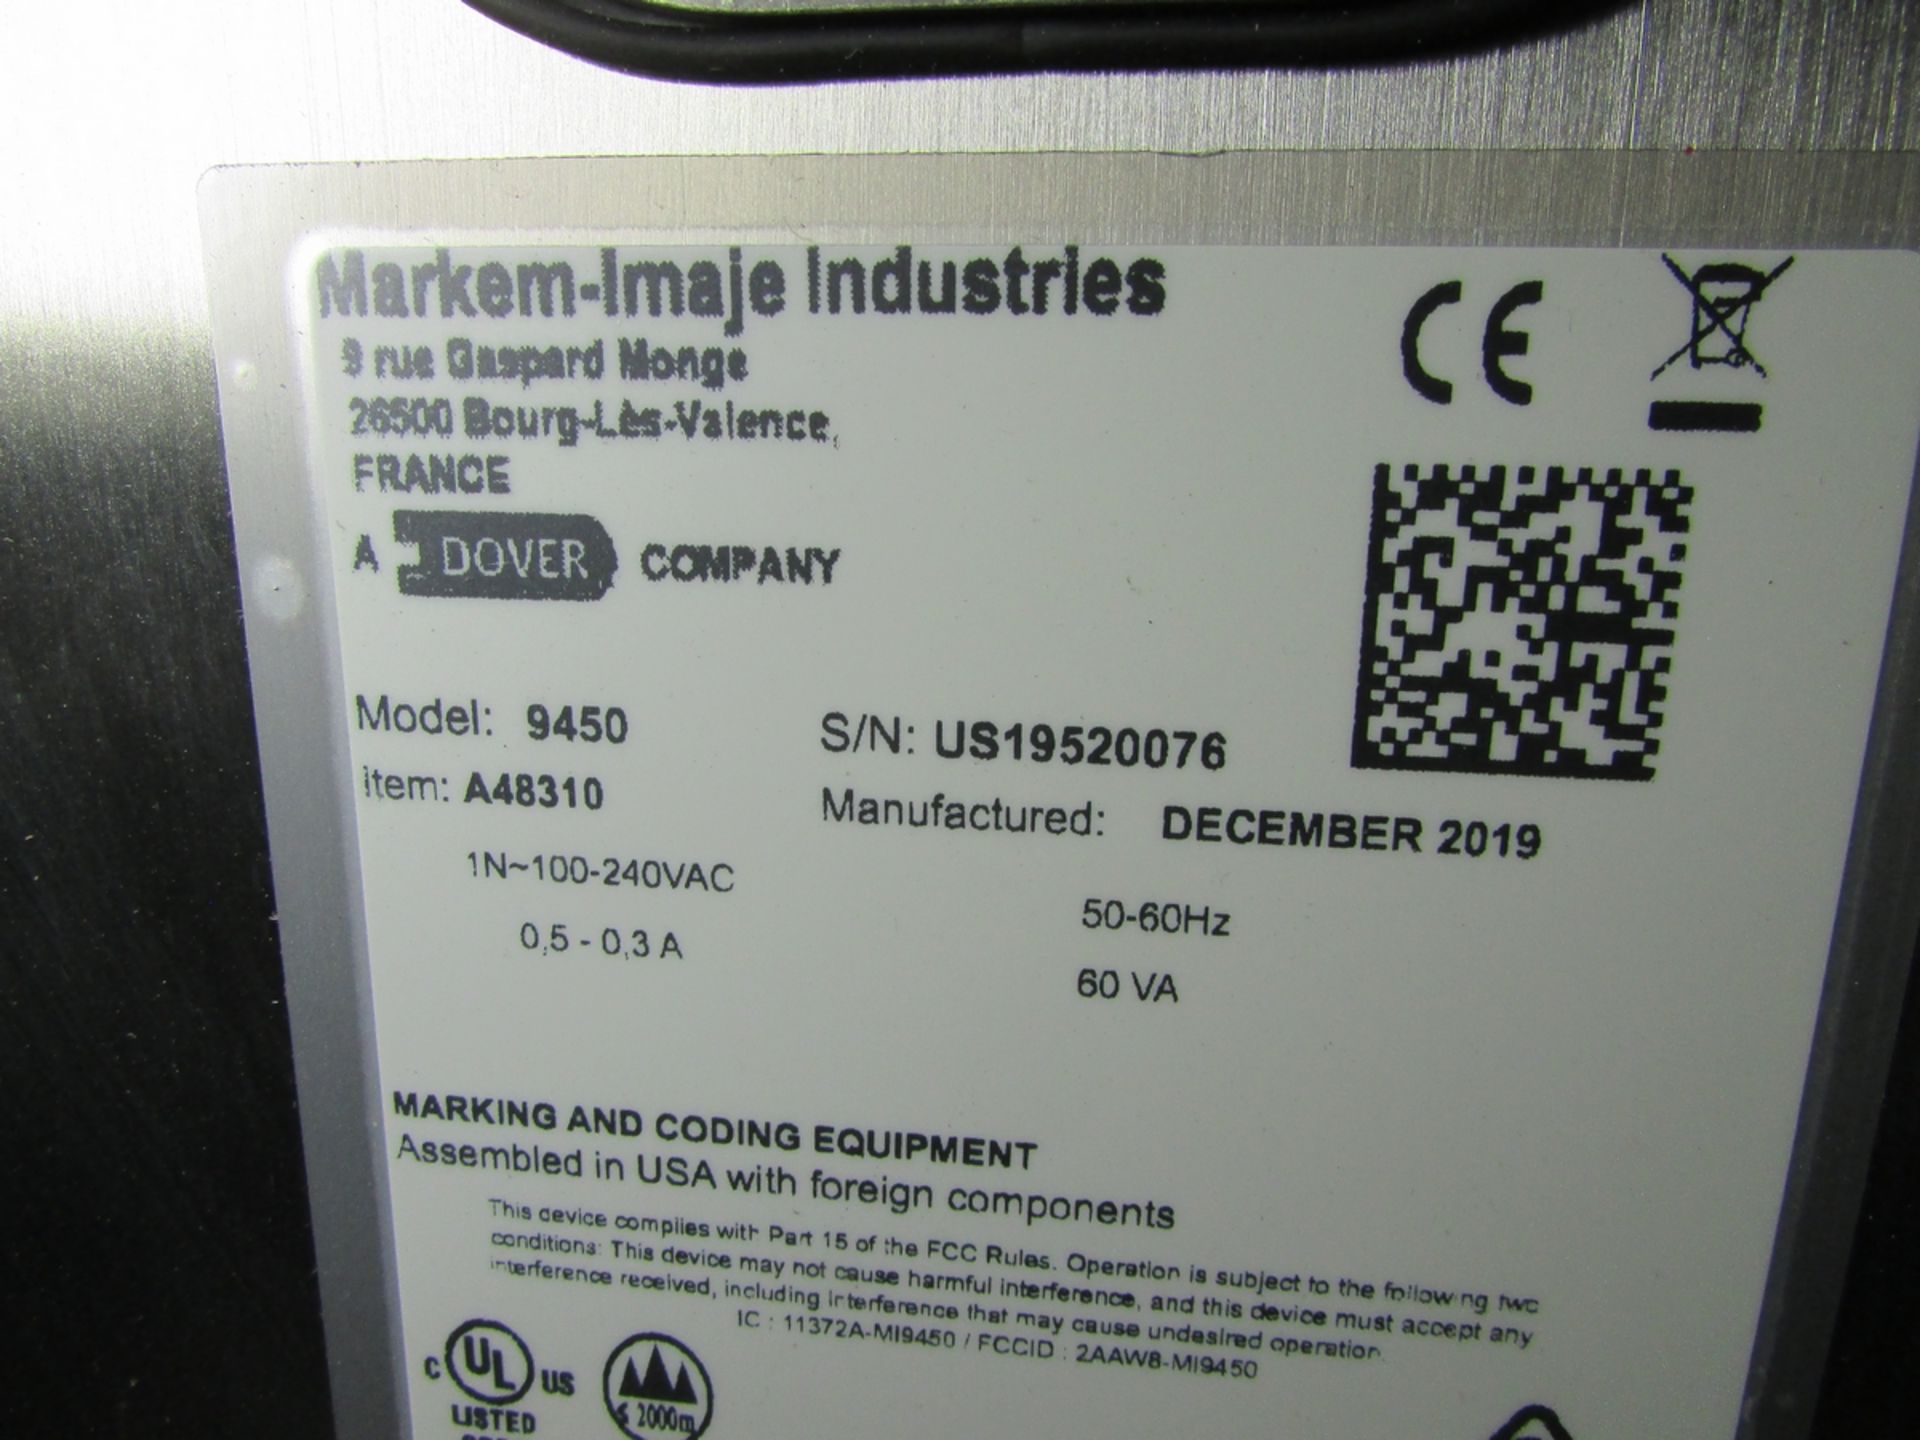 2019 MARKEM IMAJE INK JET CODING MACHINE, MODEL 9450, W/ TYPE POIGNEE MOTORISEE MARKING PISTOL, S/ - Image 8 of 8